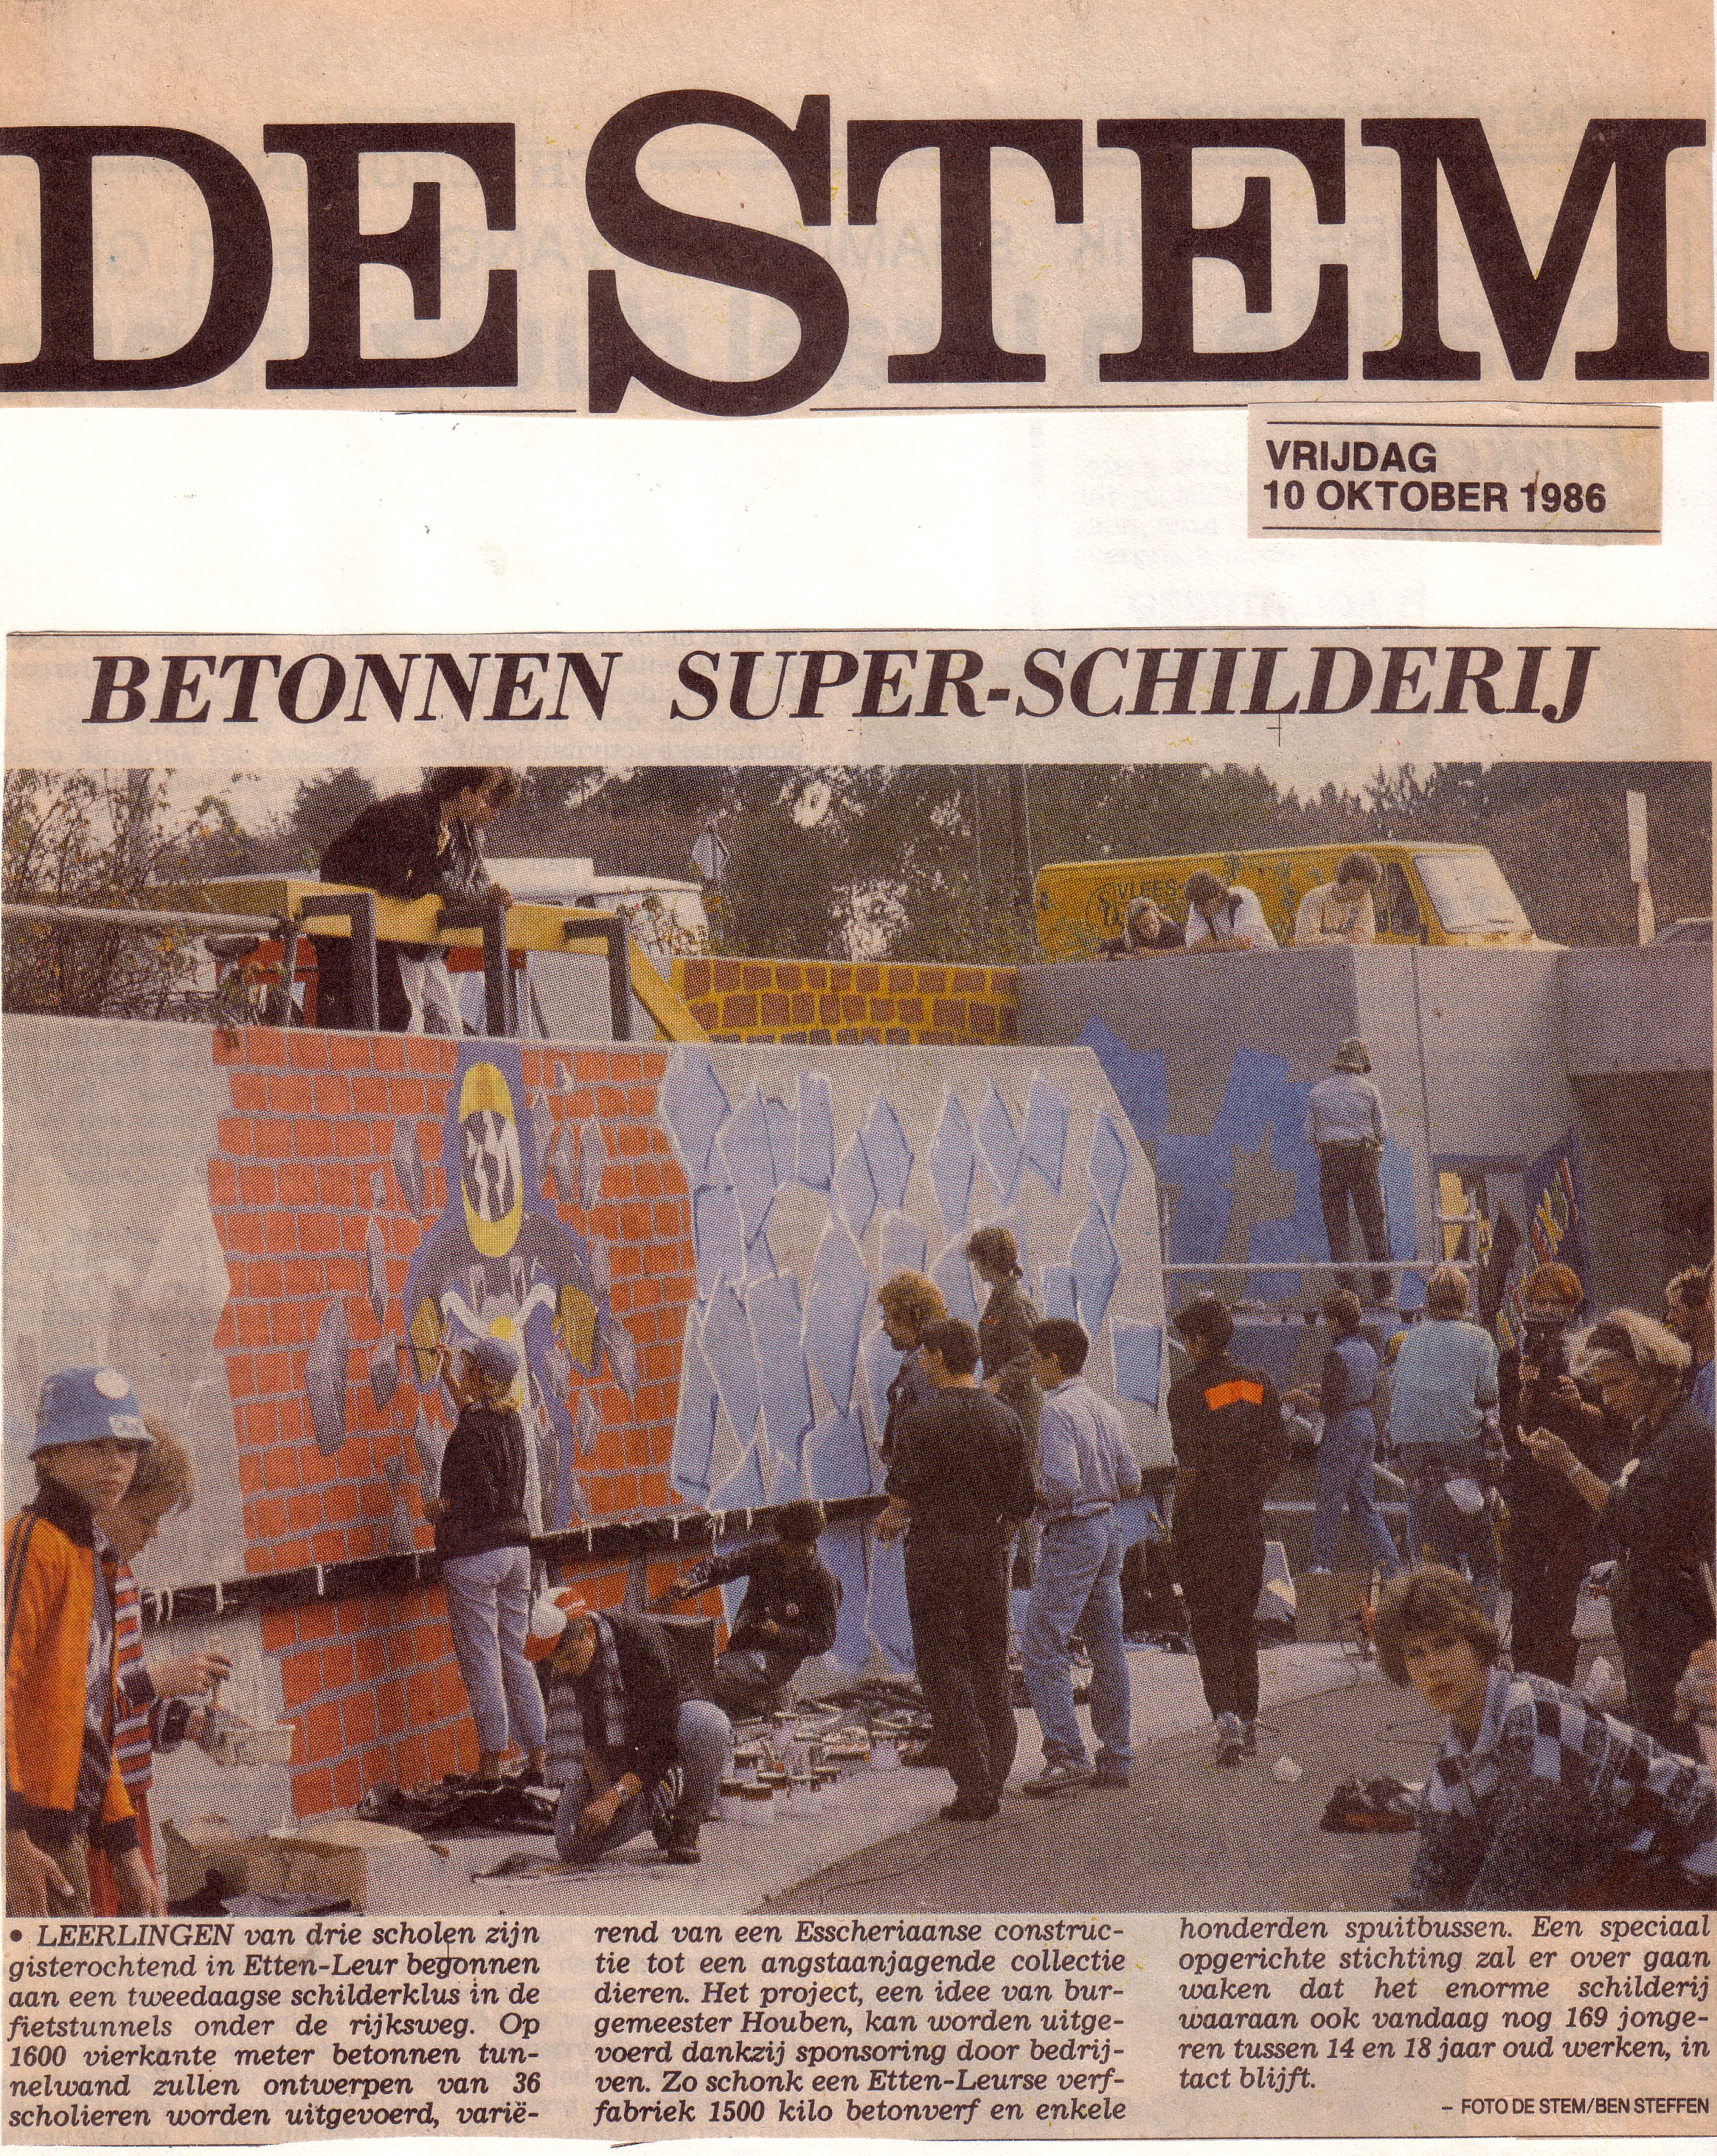 Daags na het schilderen was dit de voorpagina van Dagblad De Stem!